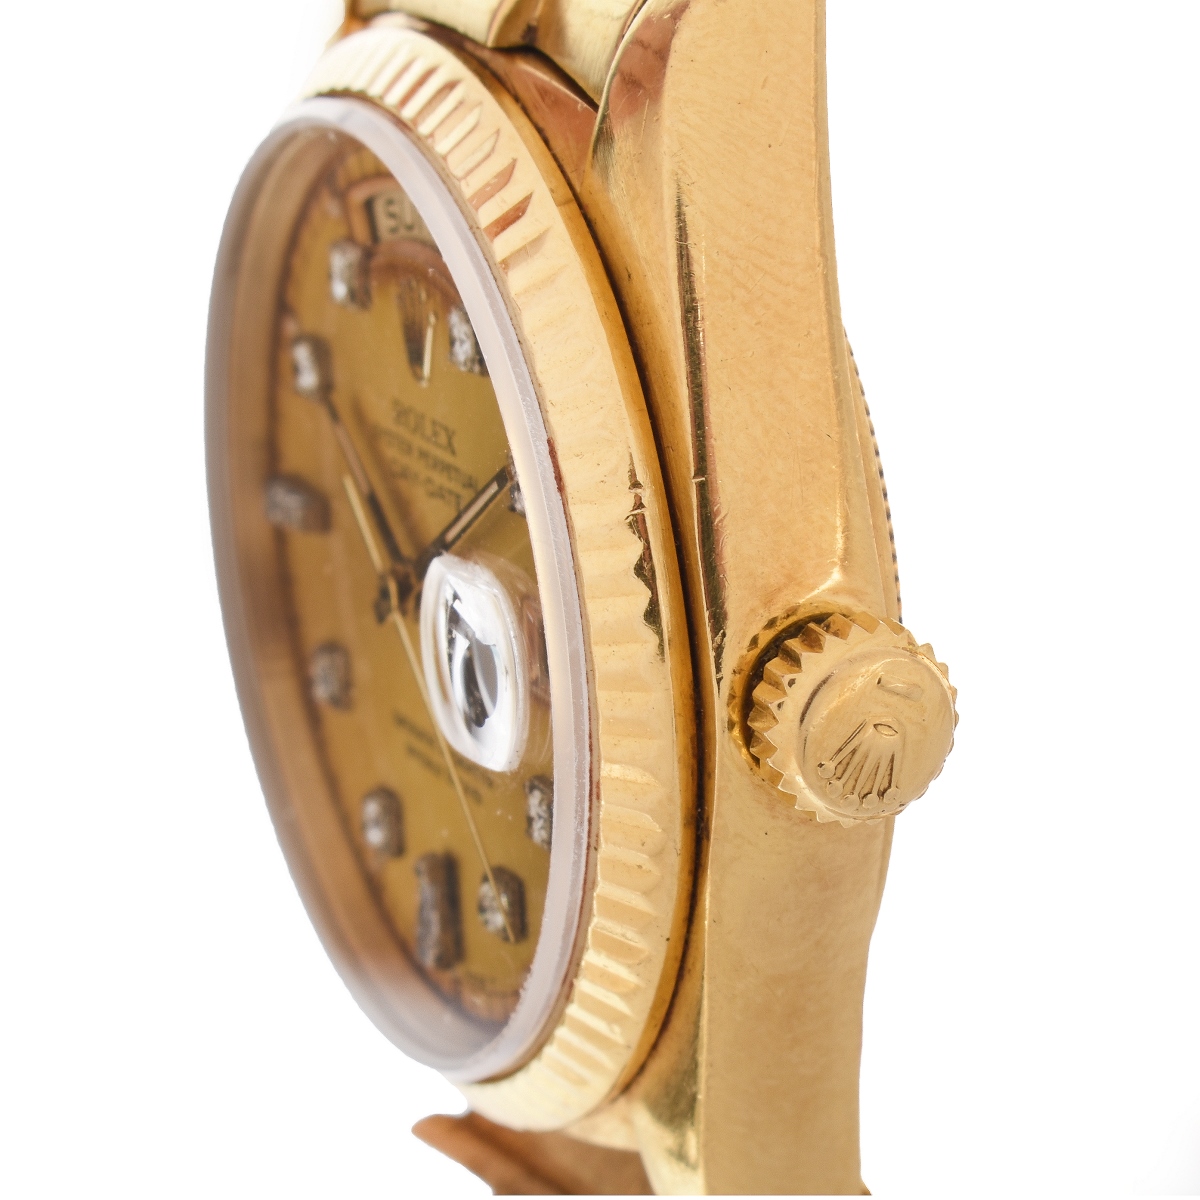 Man's Rolex 18K Watch